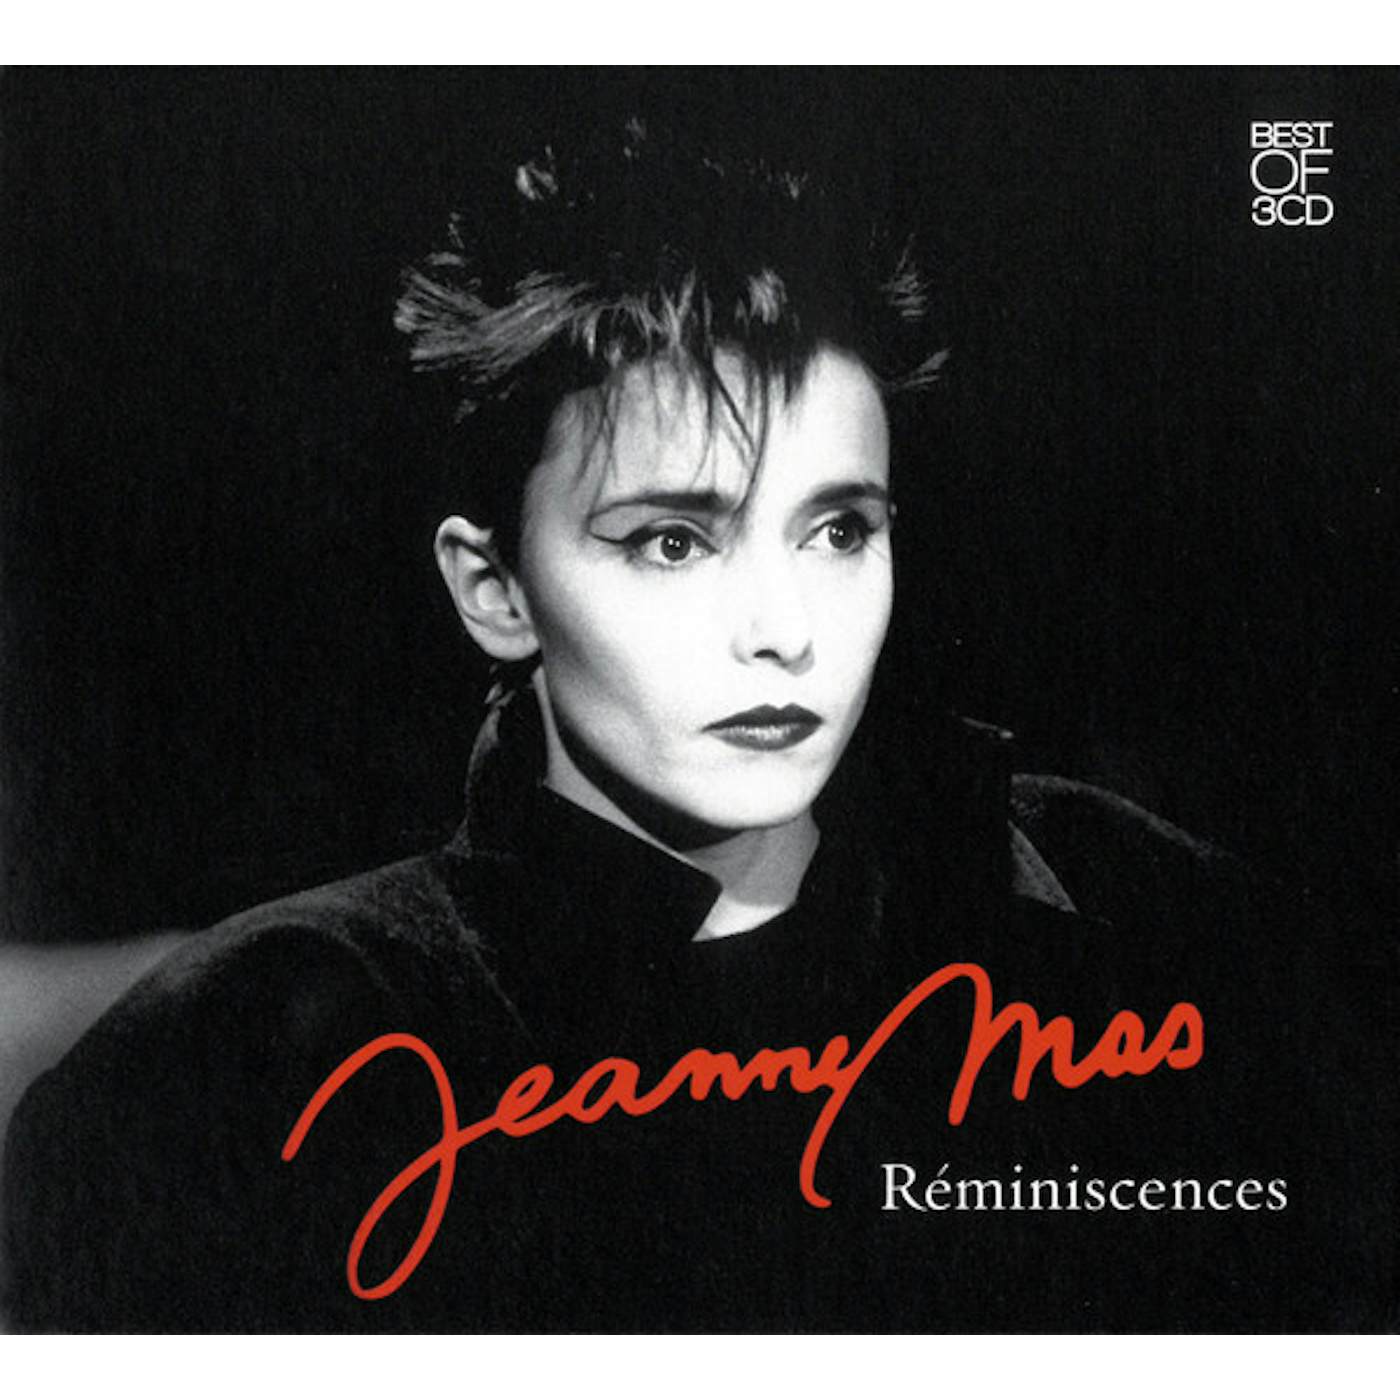 Jeanne Mas BEST OF 3CD: REMINISCENCES CD